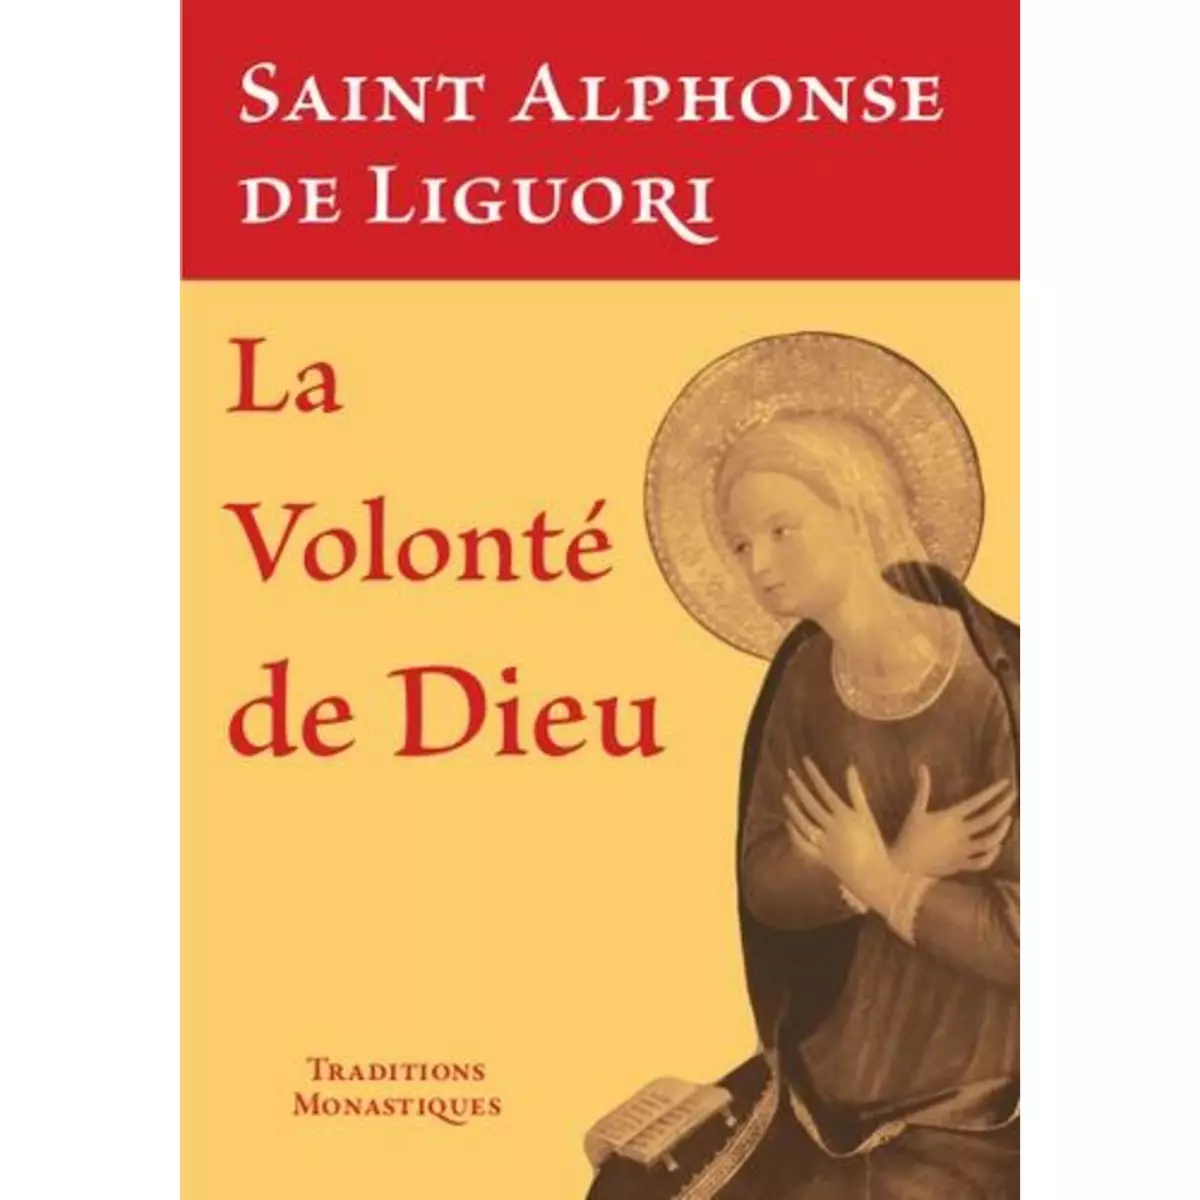  LA VOLONTE DE DIEU, Liguori Alphonse de